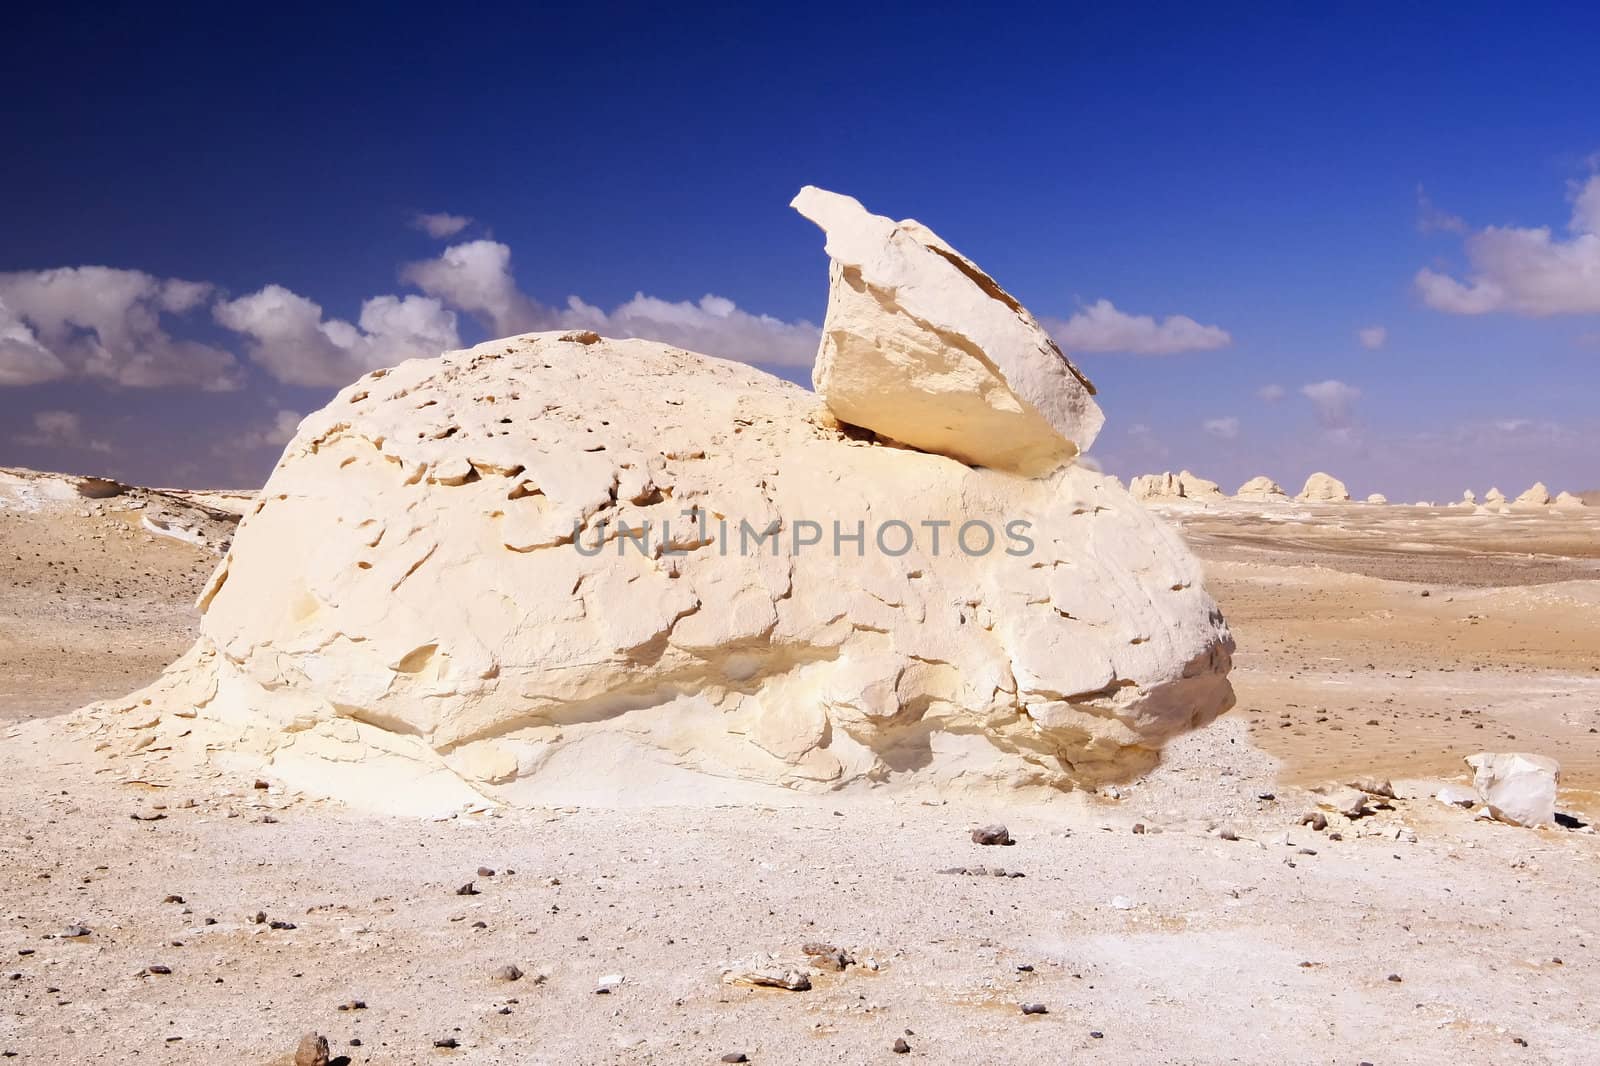 The rock formation like as rabbit in White desert,Egypt